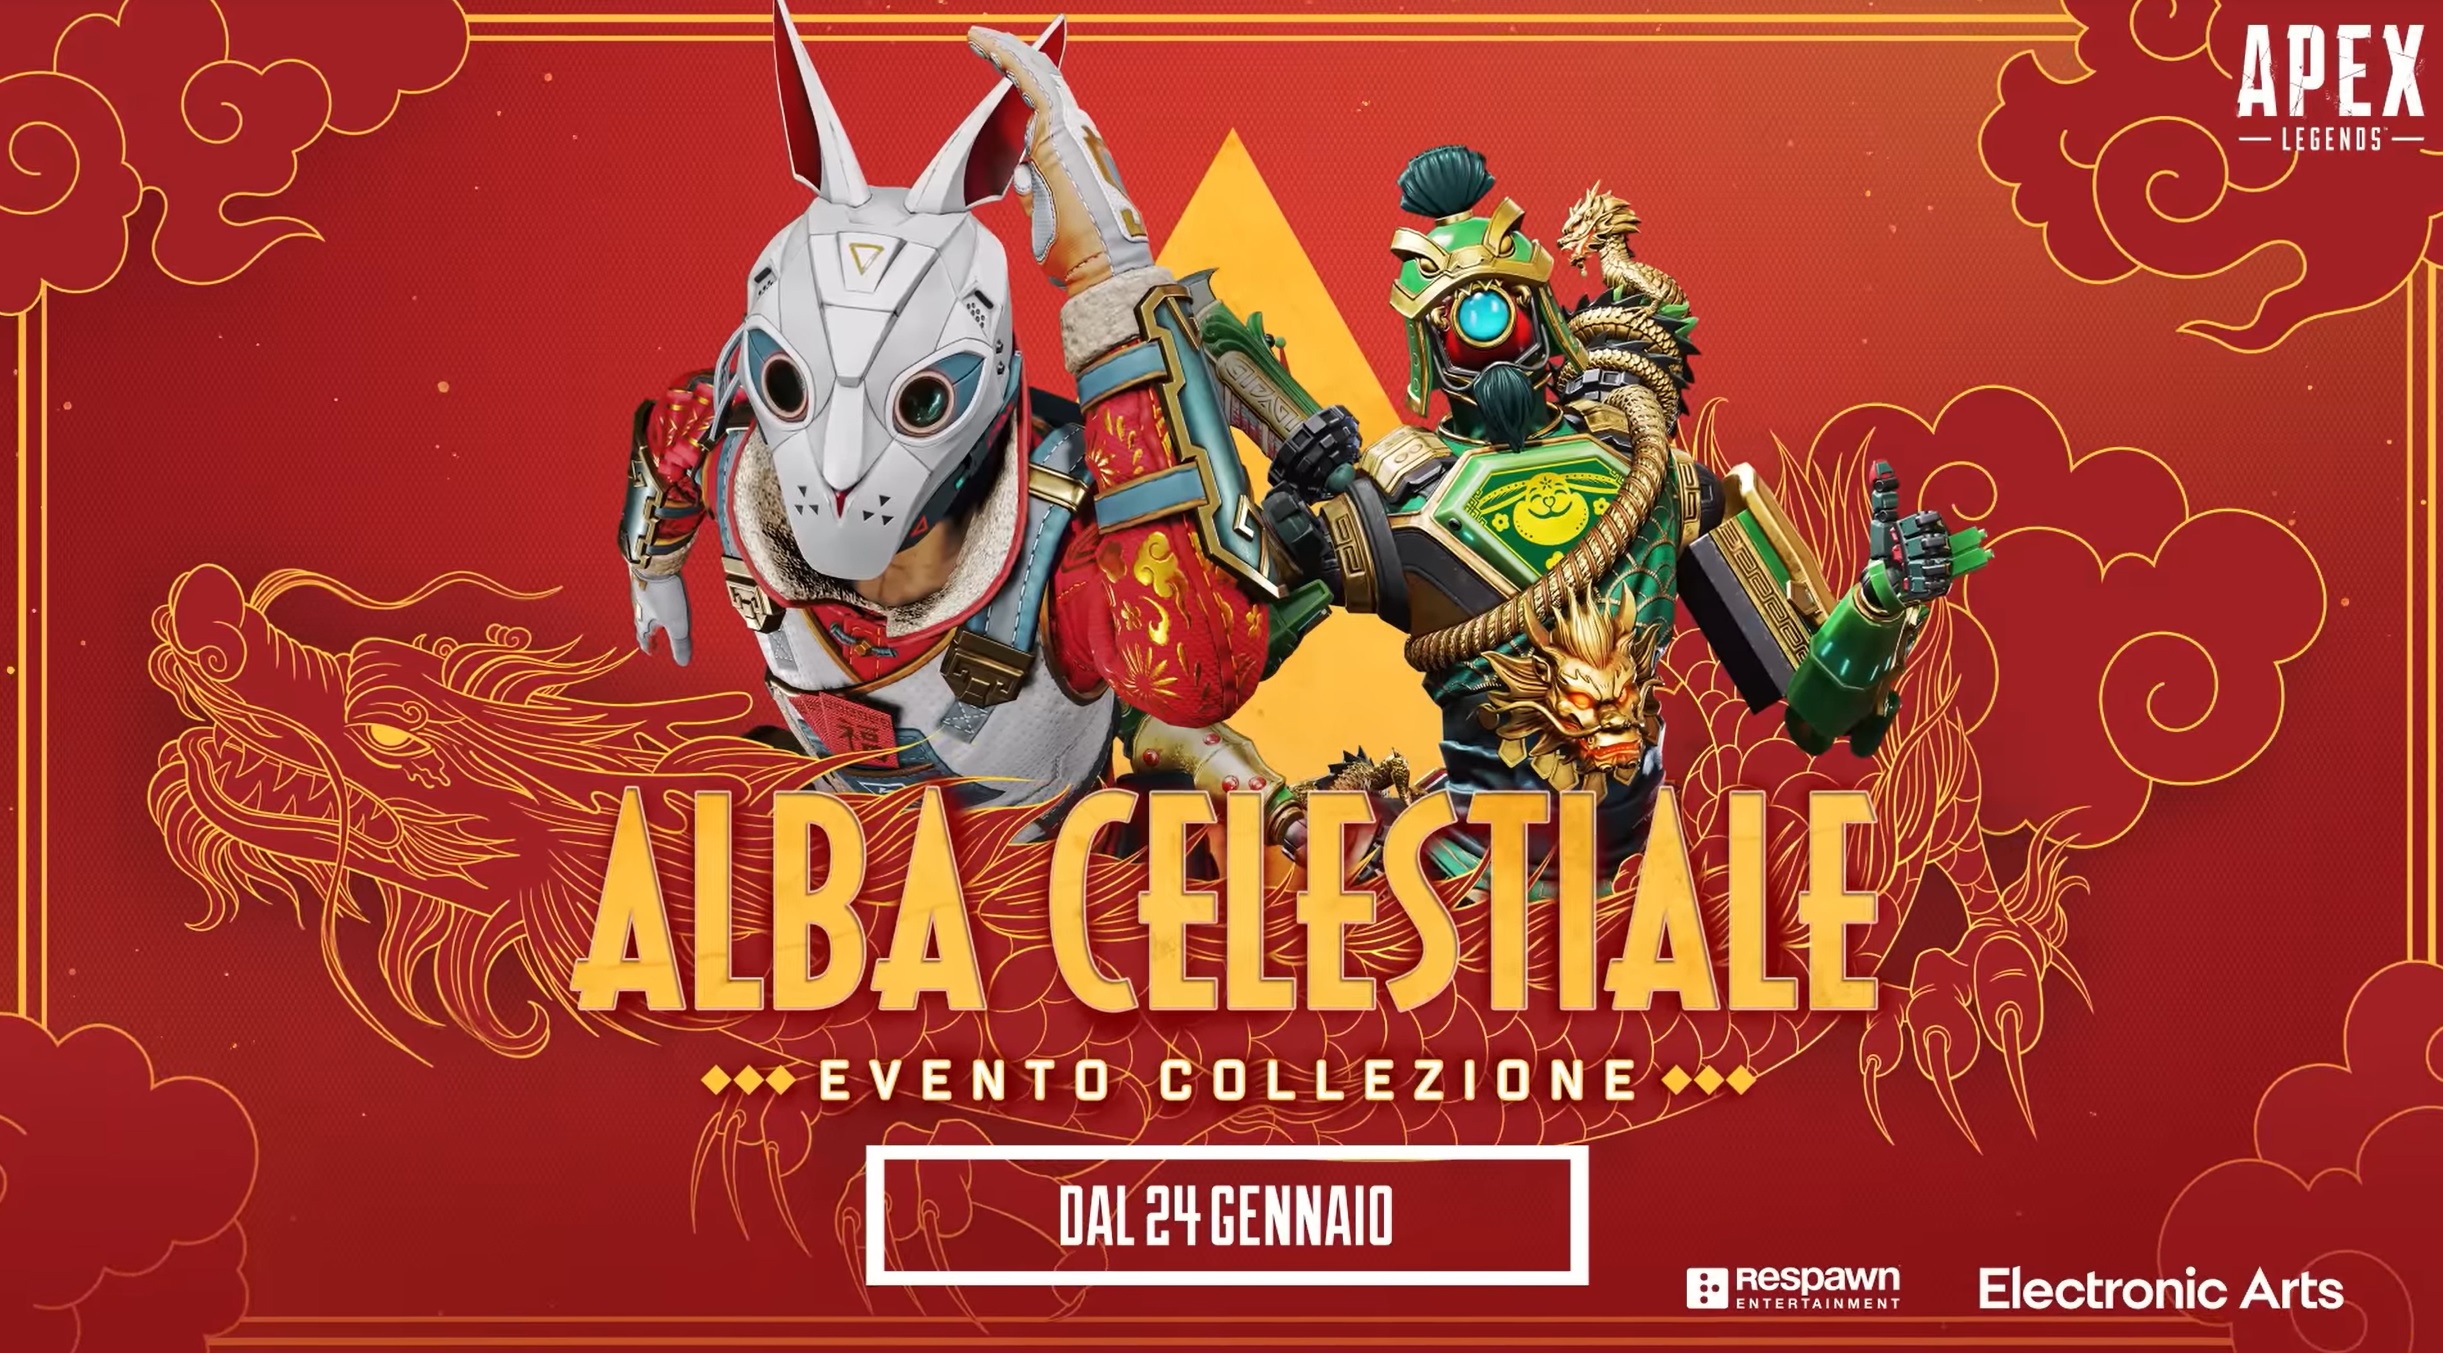 Apex Legends Evento Collezione Alba Celestiale al 24 gennaio al 7 febbraio